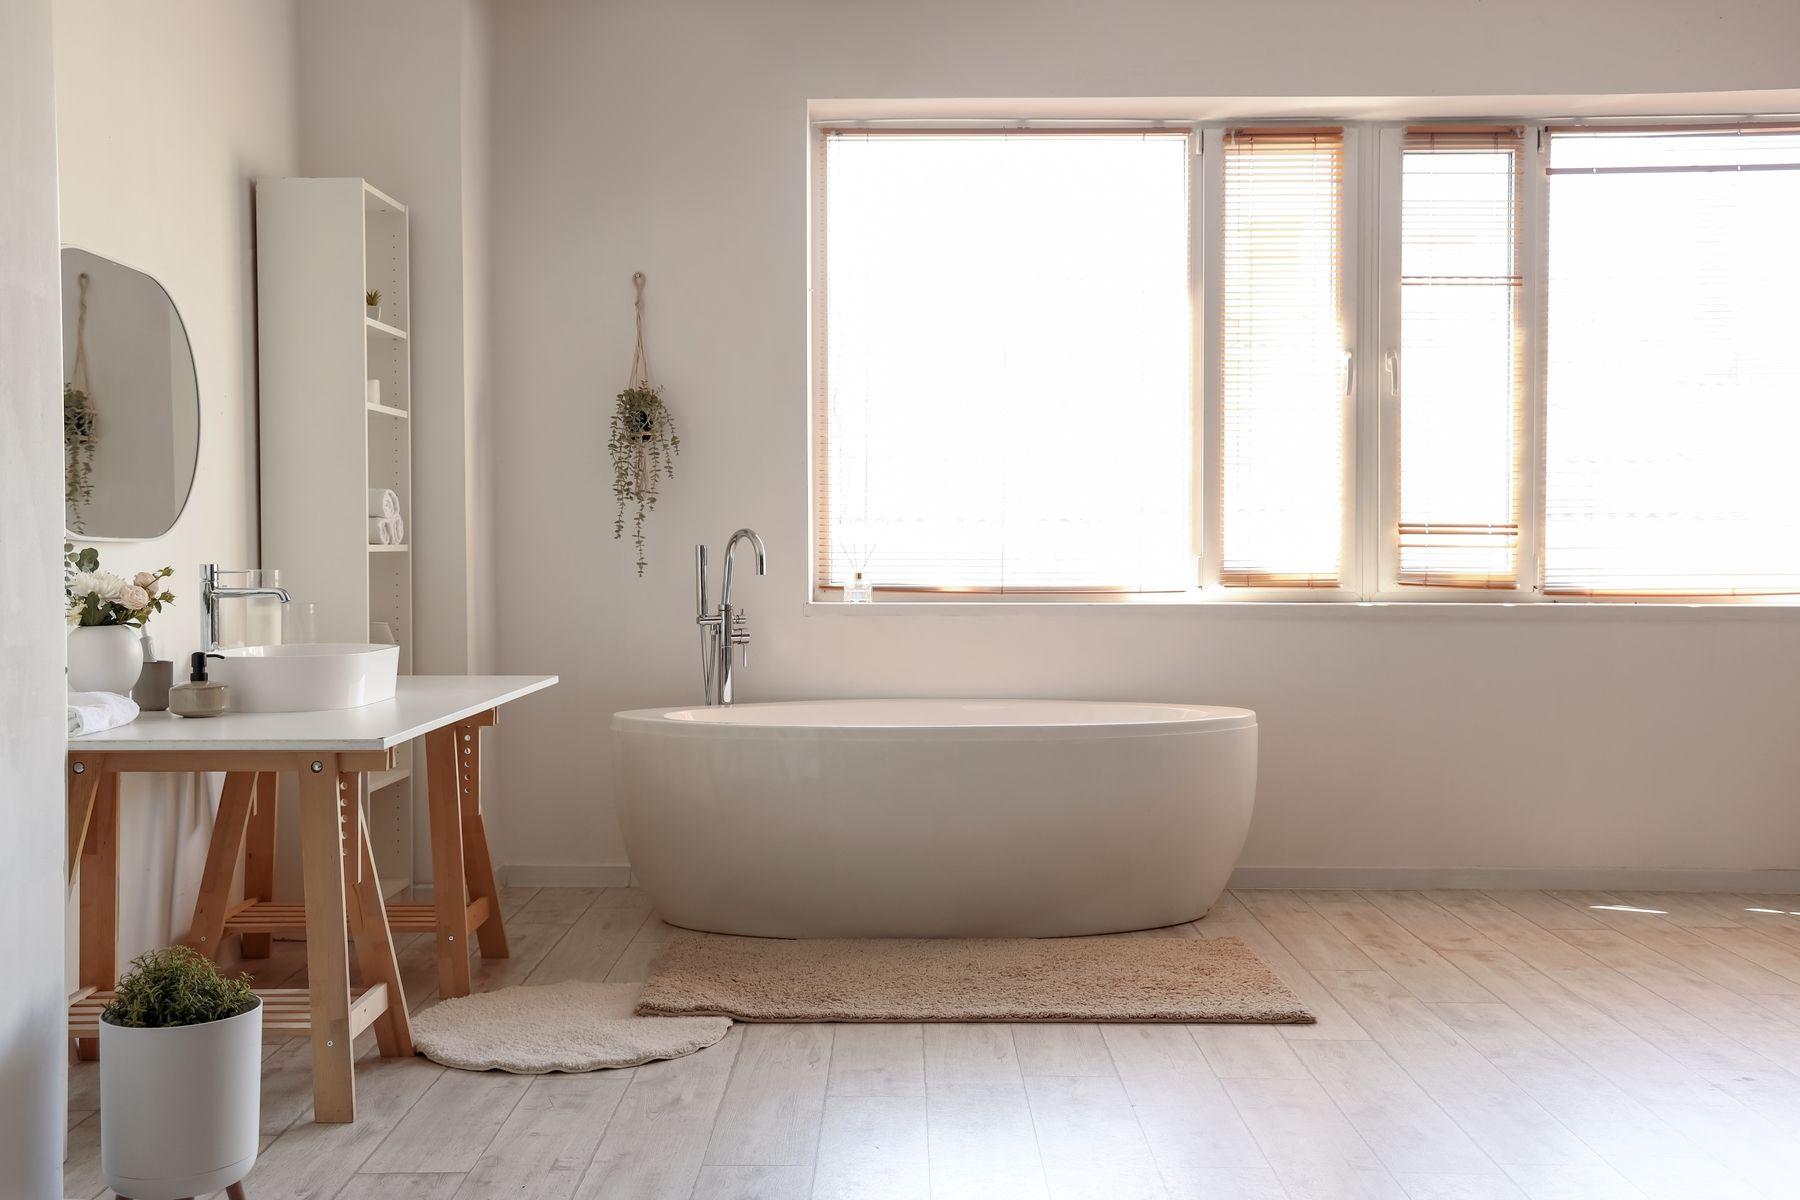 Ljust badrum med väggar i microcement och badkar. Harmonisk inredning med ljusinsläpp från stora fönster.